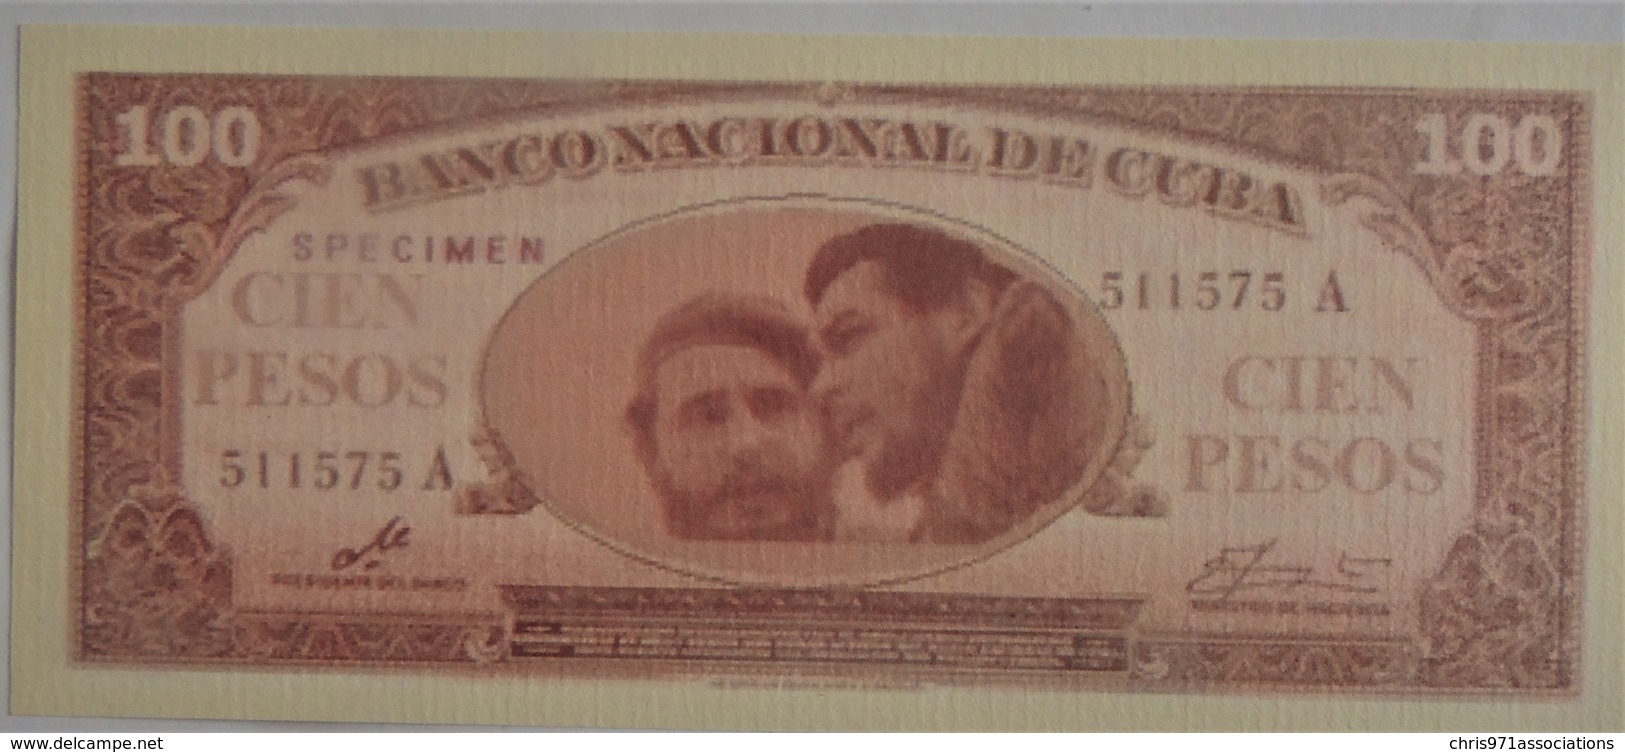 Trés Rare Billet De Cuba 100 Pesos 1960 Ou 1961 Spécimen Neuf/UNC Signé Par Le Che NON REPERTORIE - Cuba